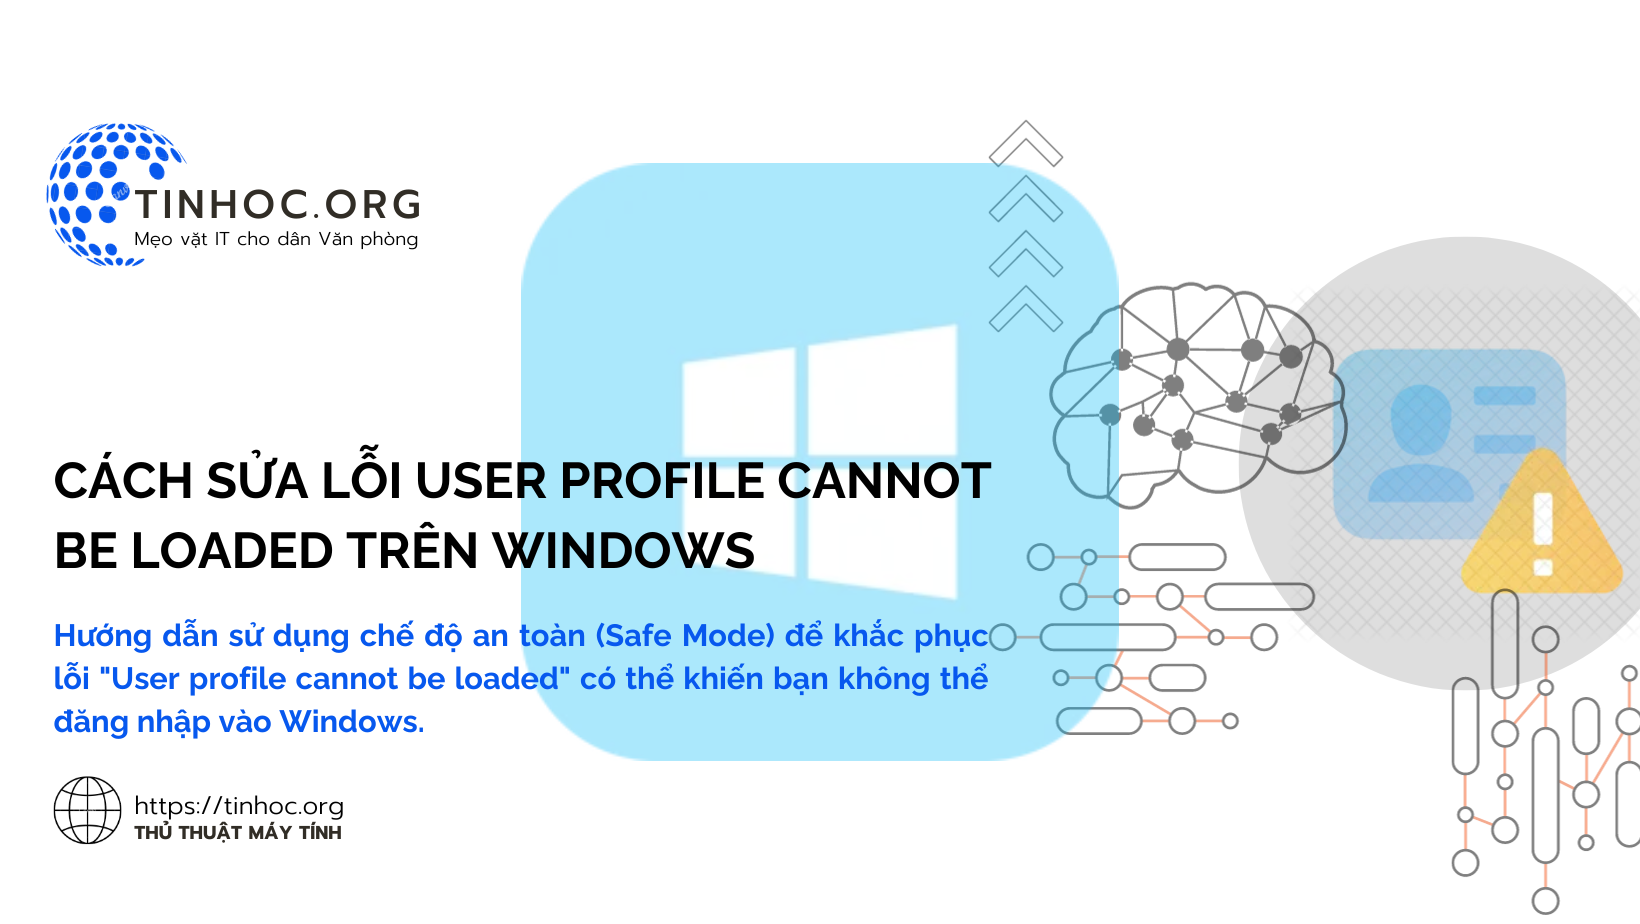 Hướng dẫn sử dụng chế độ an toàn (Safe Mode) để khắc phục lỗi "User profile cannot be loaded" có thể khiến bạn không thể đăng nhập vào Windows.